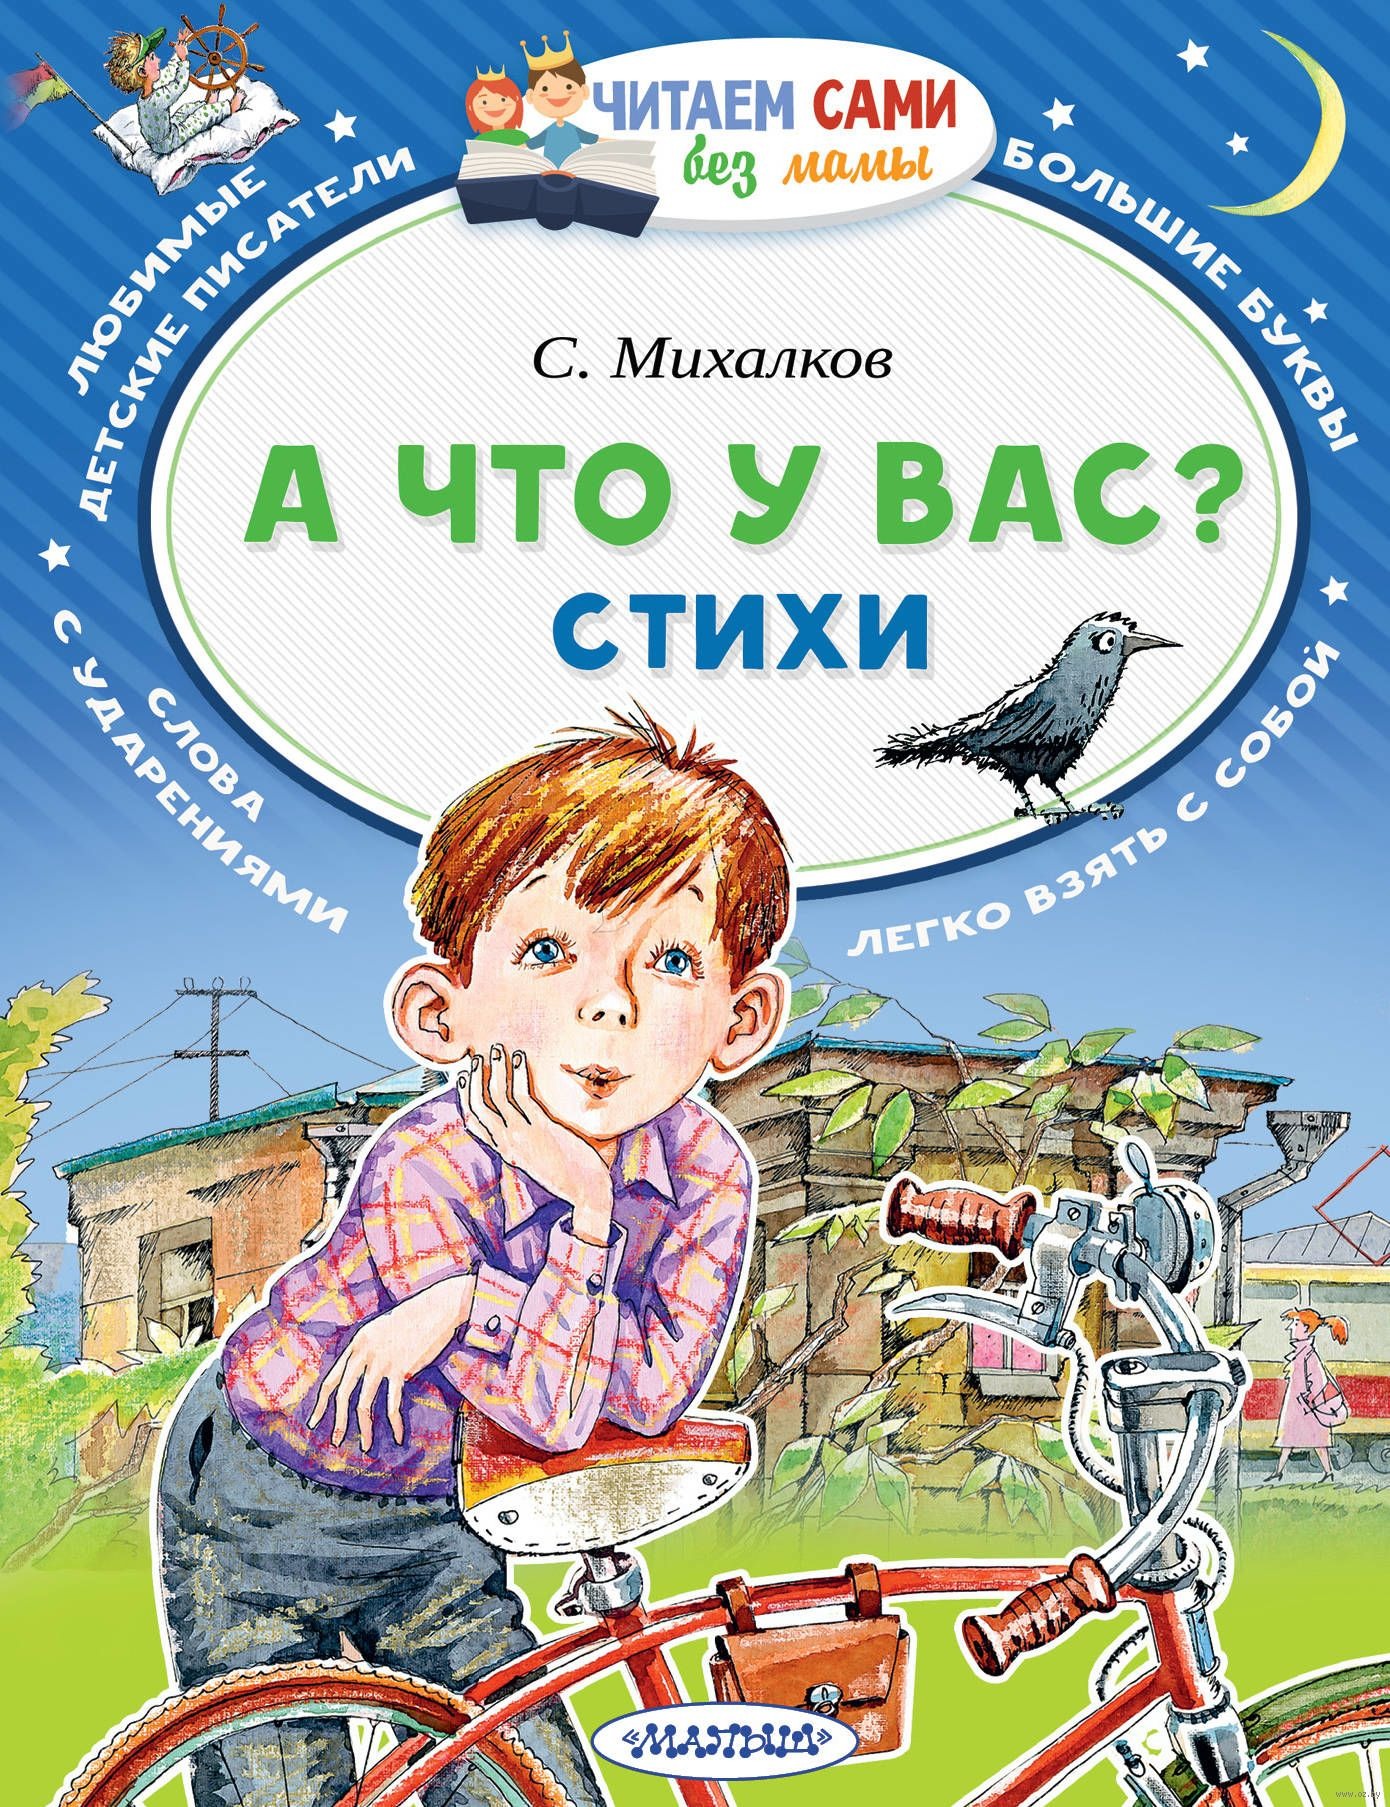 Книги про михалкова. Михалков книги для детей. Книги Михалкова для детей. Детские книги Михалкова.